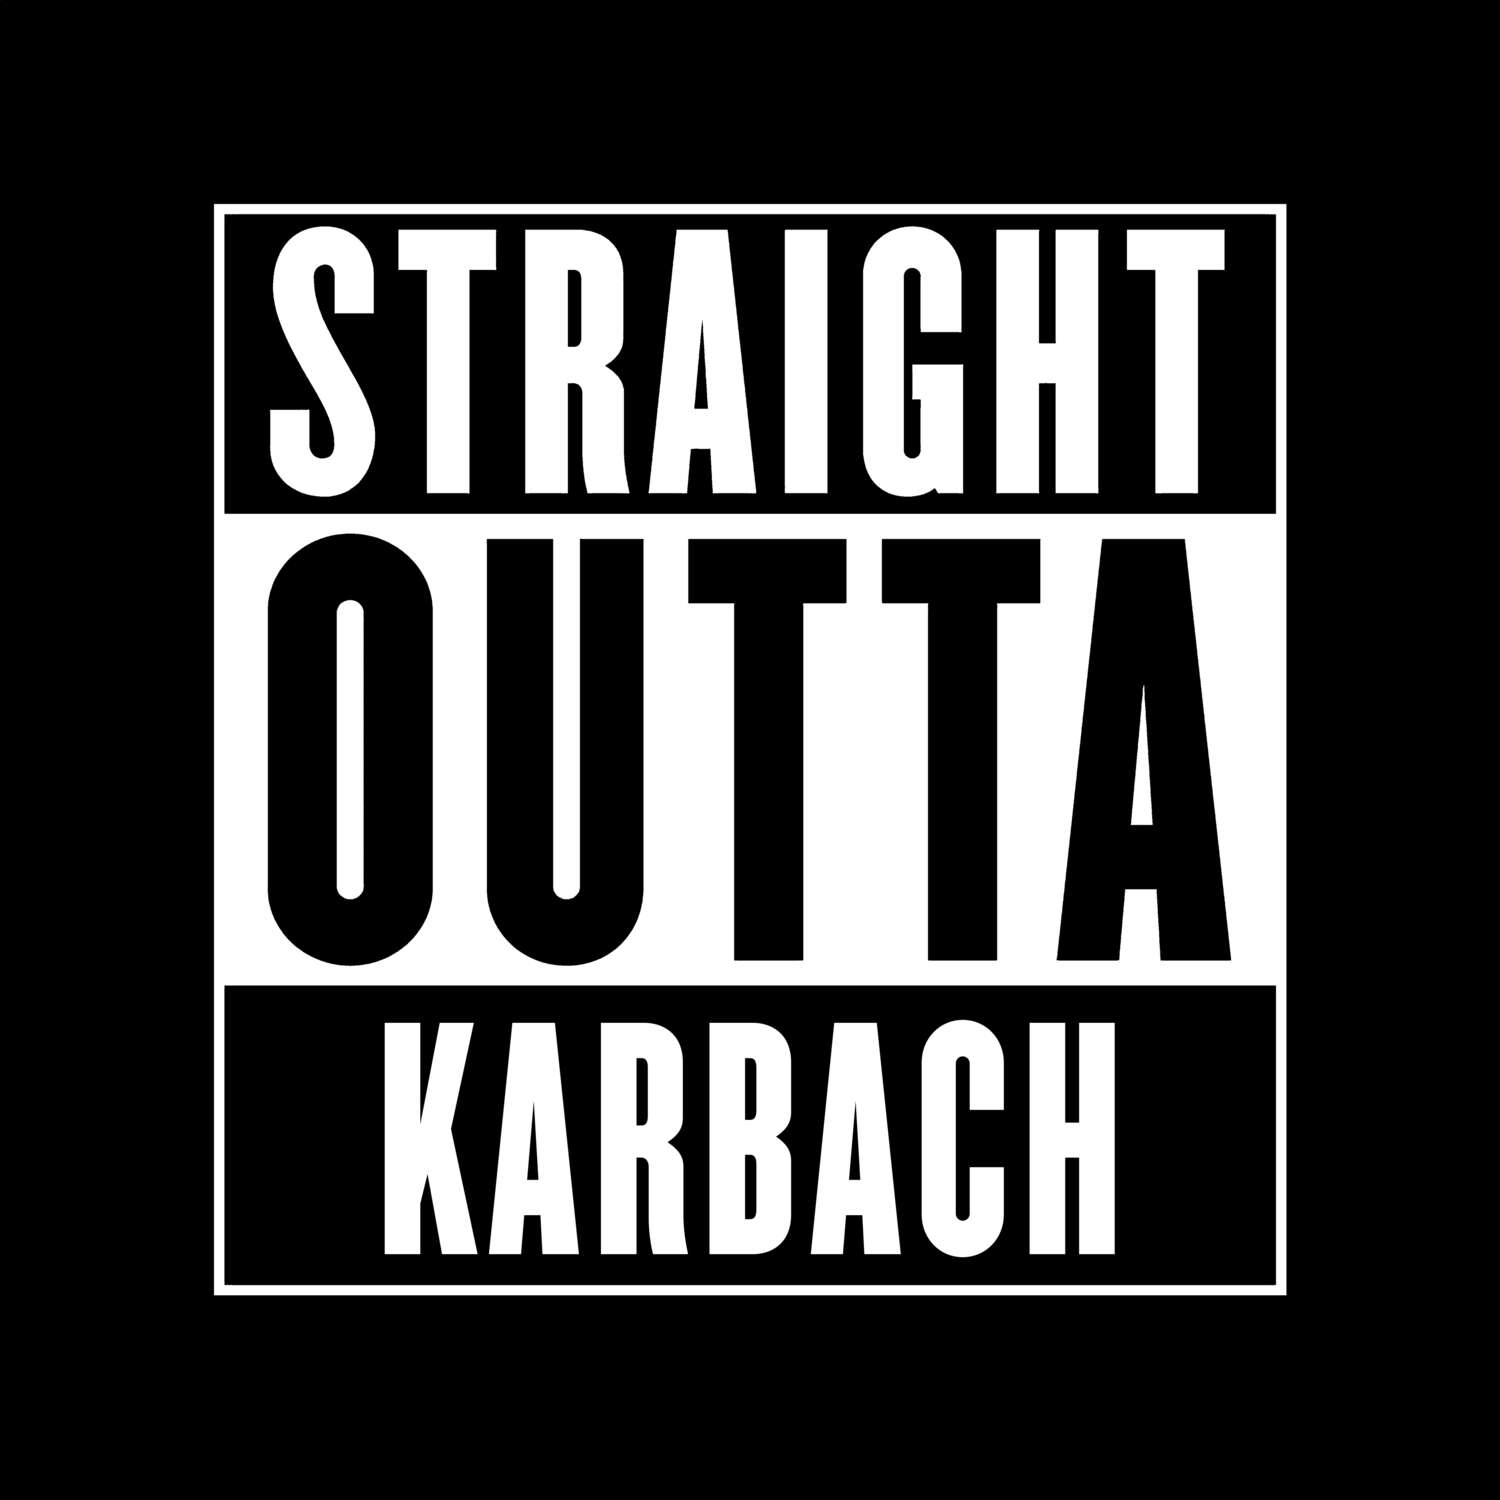 Karbach T-Shirt »Straight Outta«